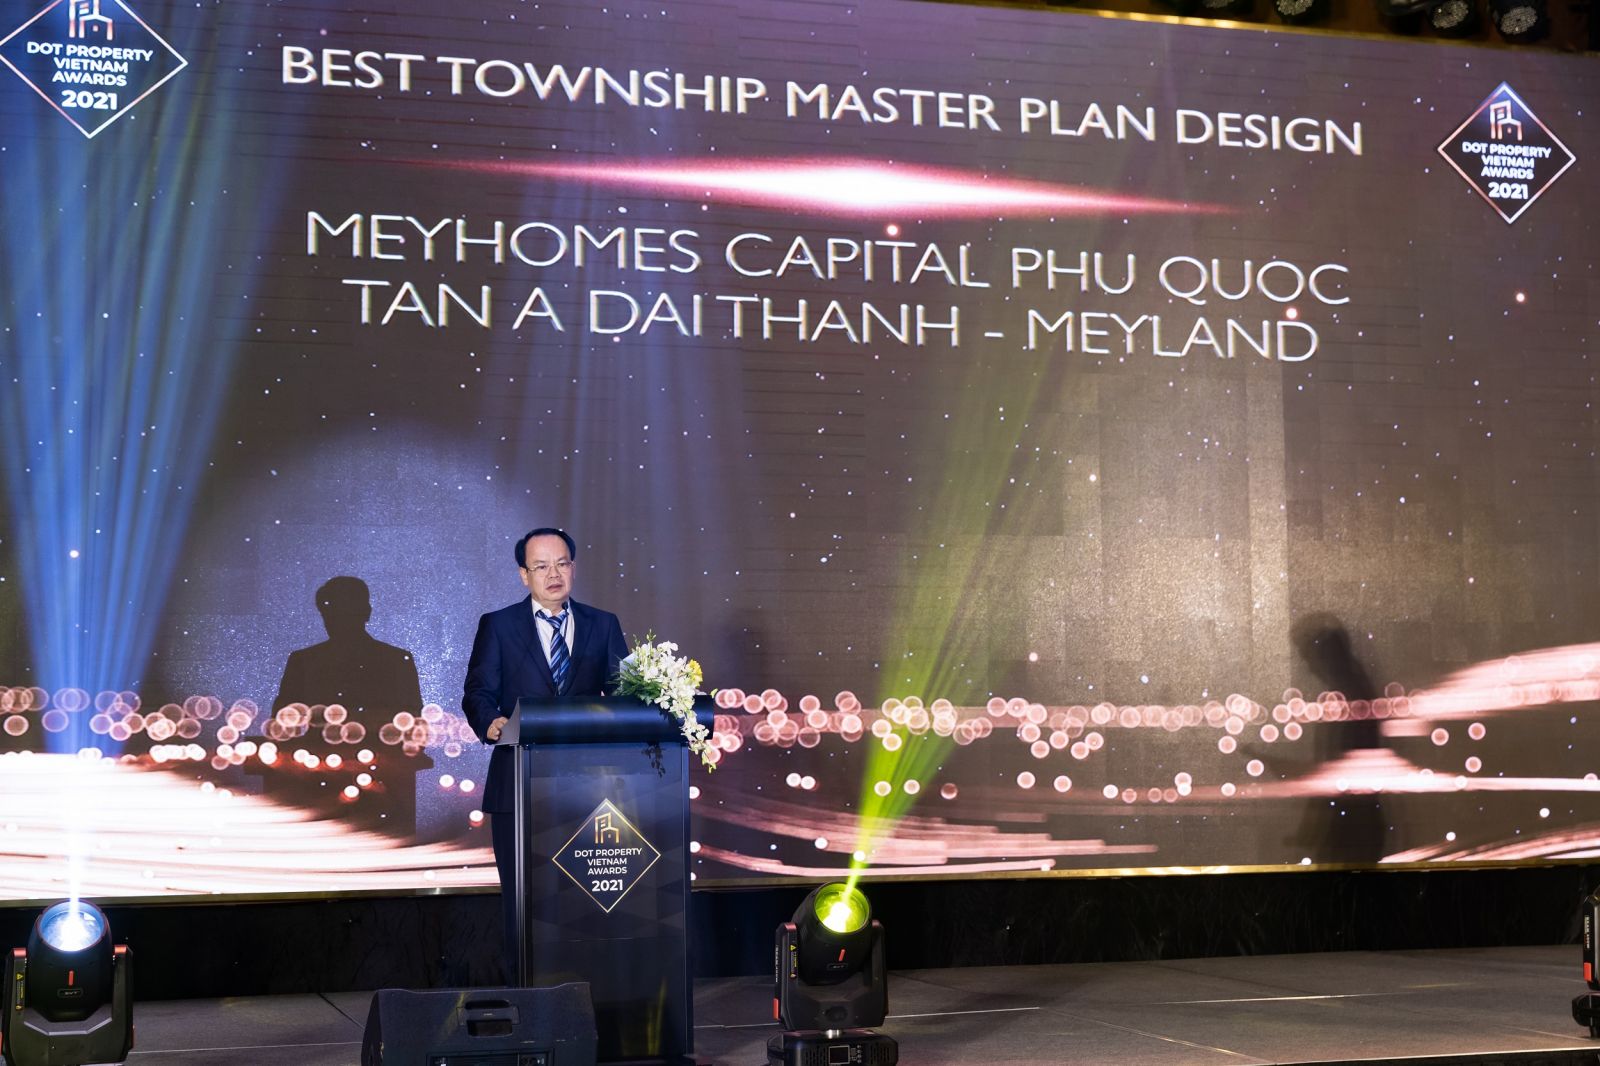 Ông Nguyễn Minh Ngọc -Phó Chủ tịch HĐQT Tập đoàn Tân Á Đại Thành phát biểu tại Lễ trao giải Dot Property Vietnam Awards 2021